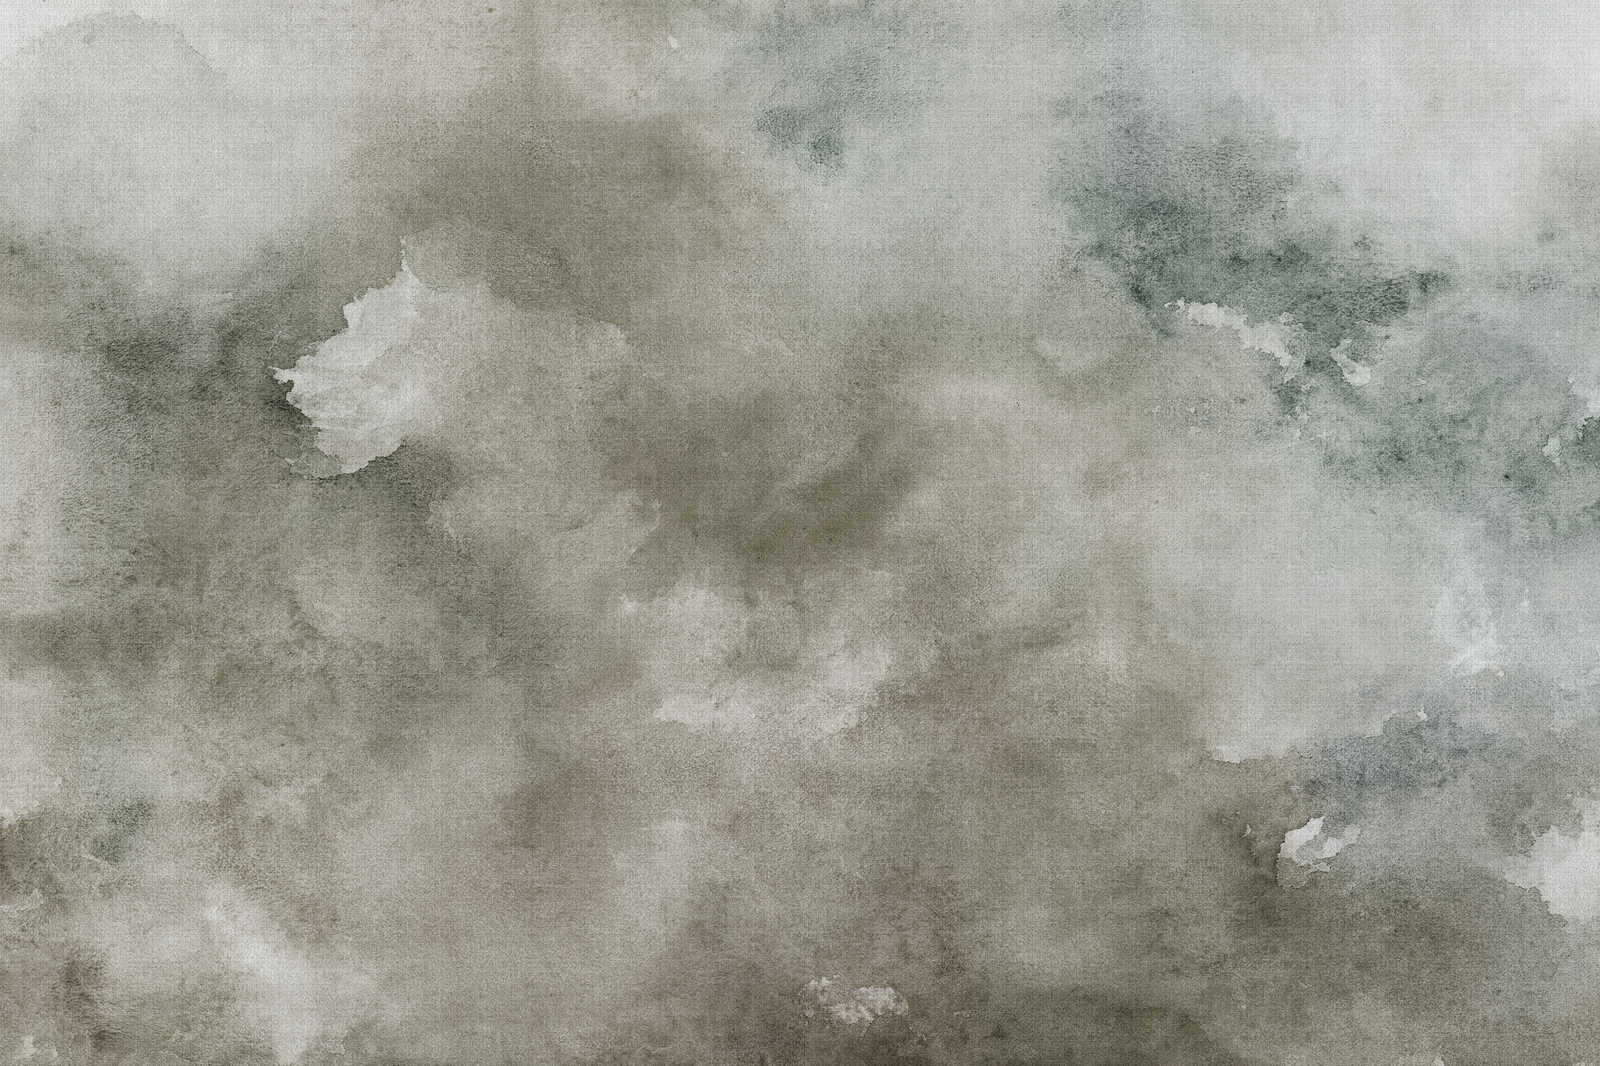             Acquerelli 1 - Quadro su tela ad acquerello grigio in lino naturale - 1,20 m x 0,80 m
        